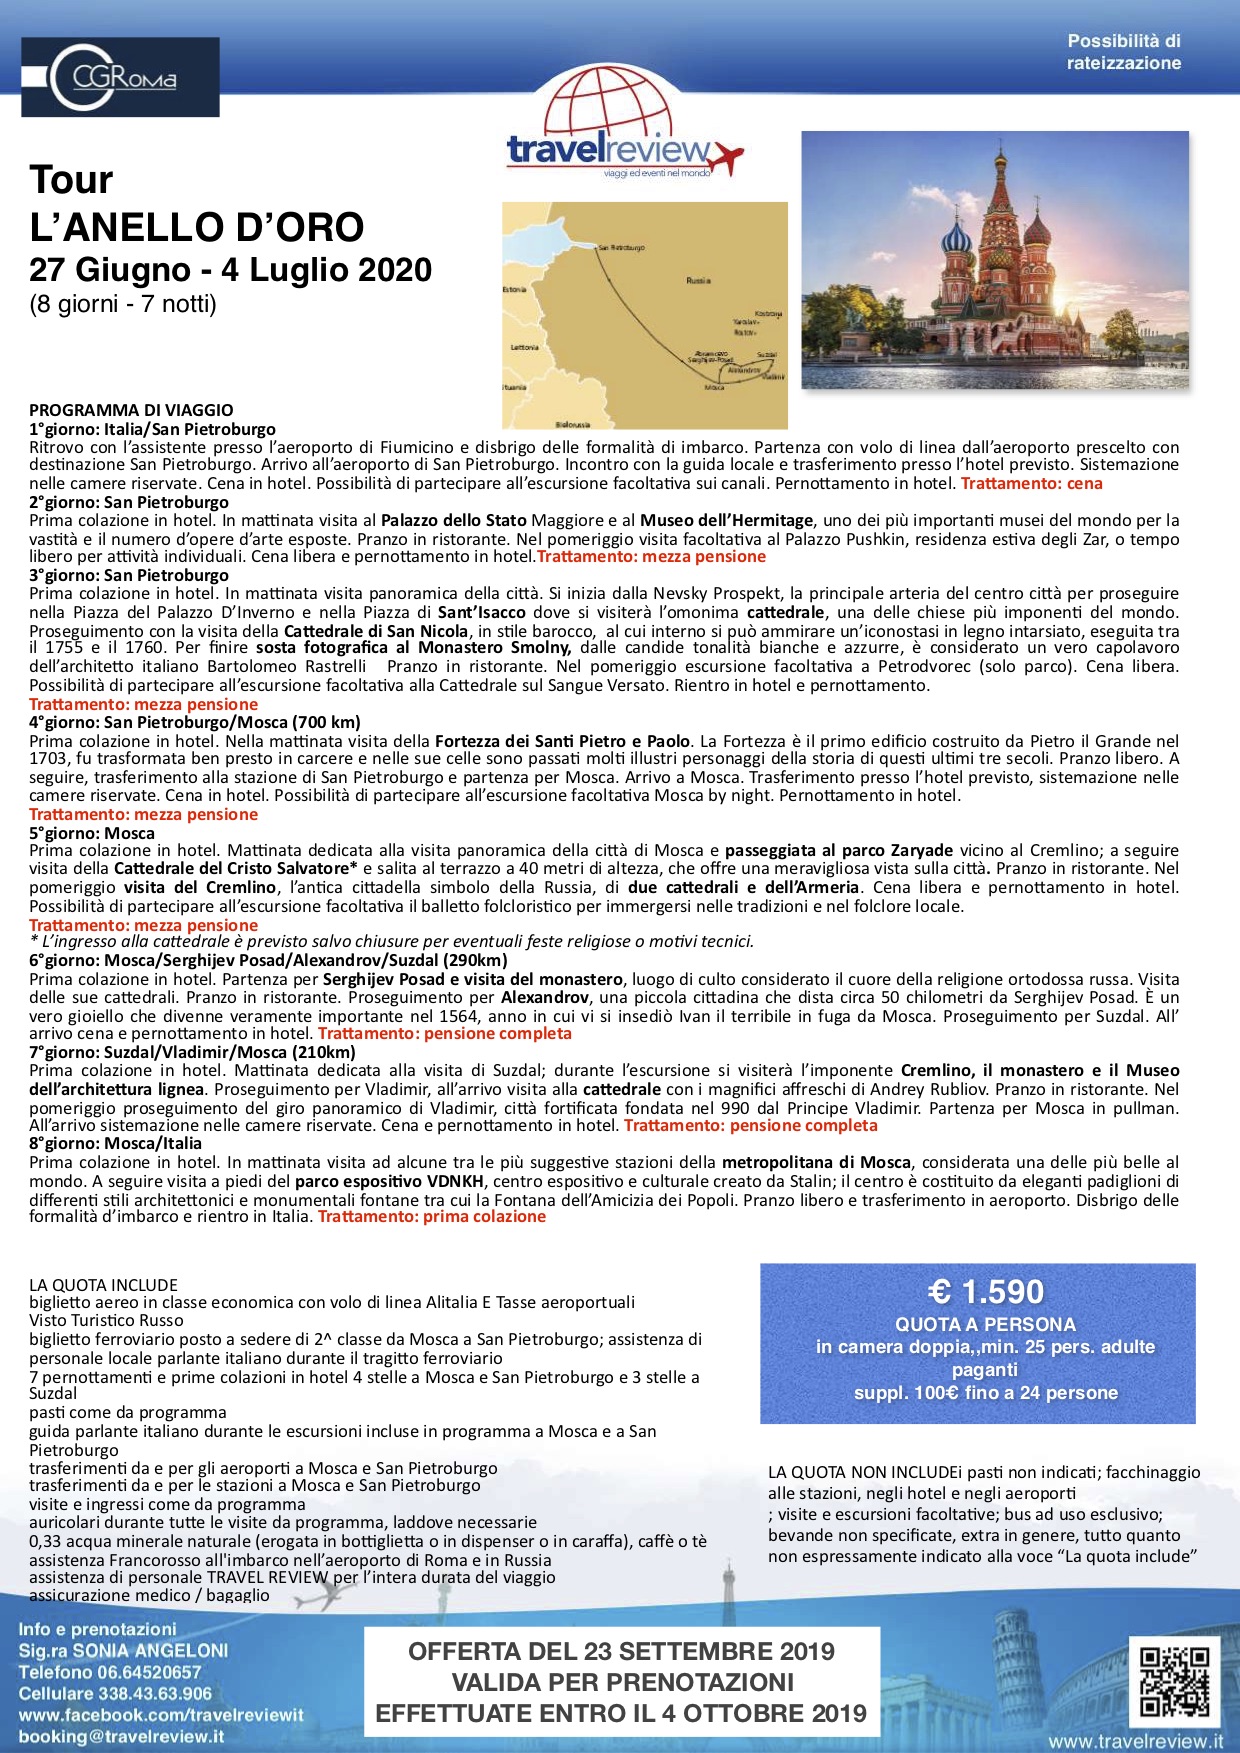 LANELLO DORO Part. di Gruppo 27 Giugno 2020 CRAL CIGIRO compressed